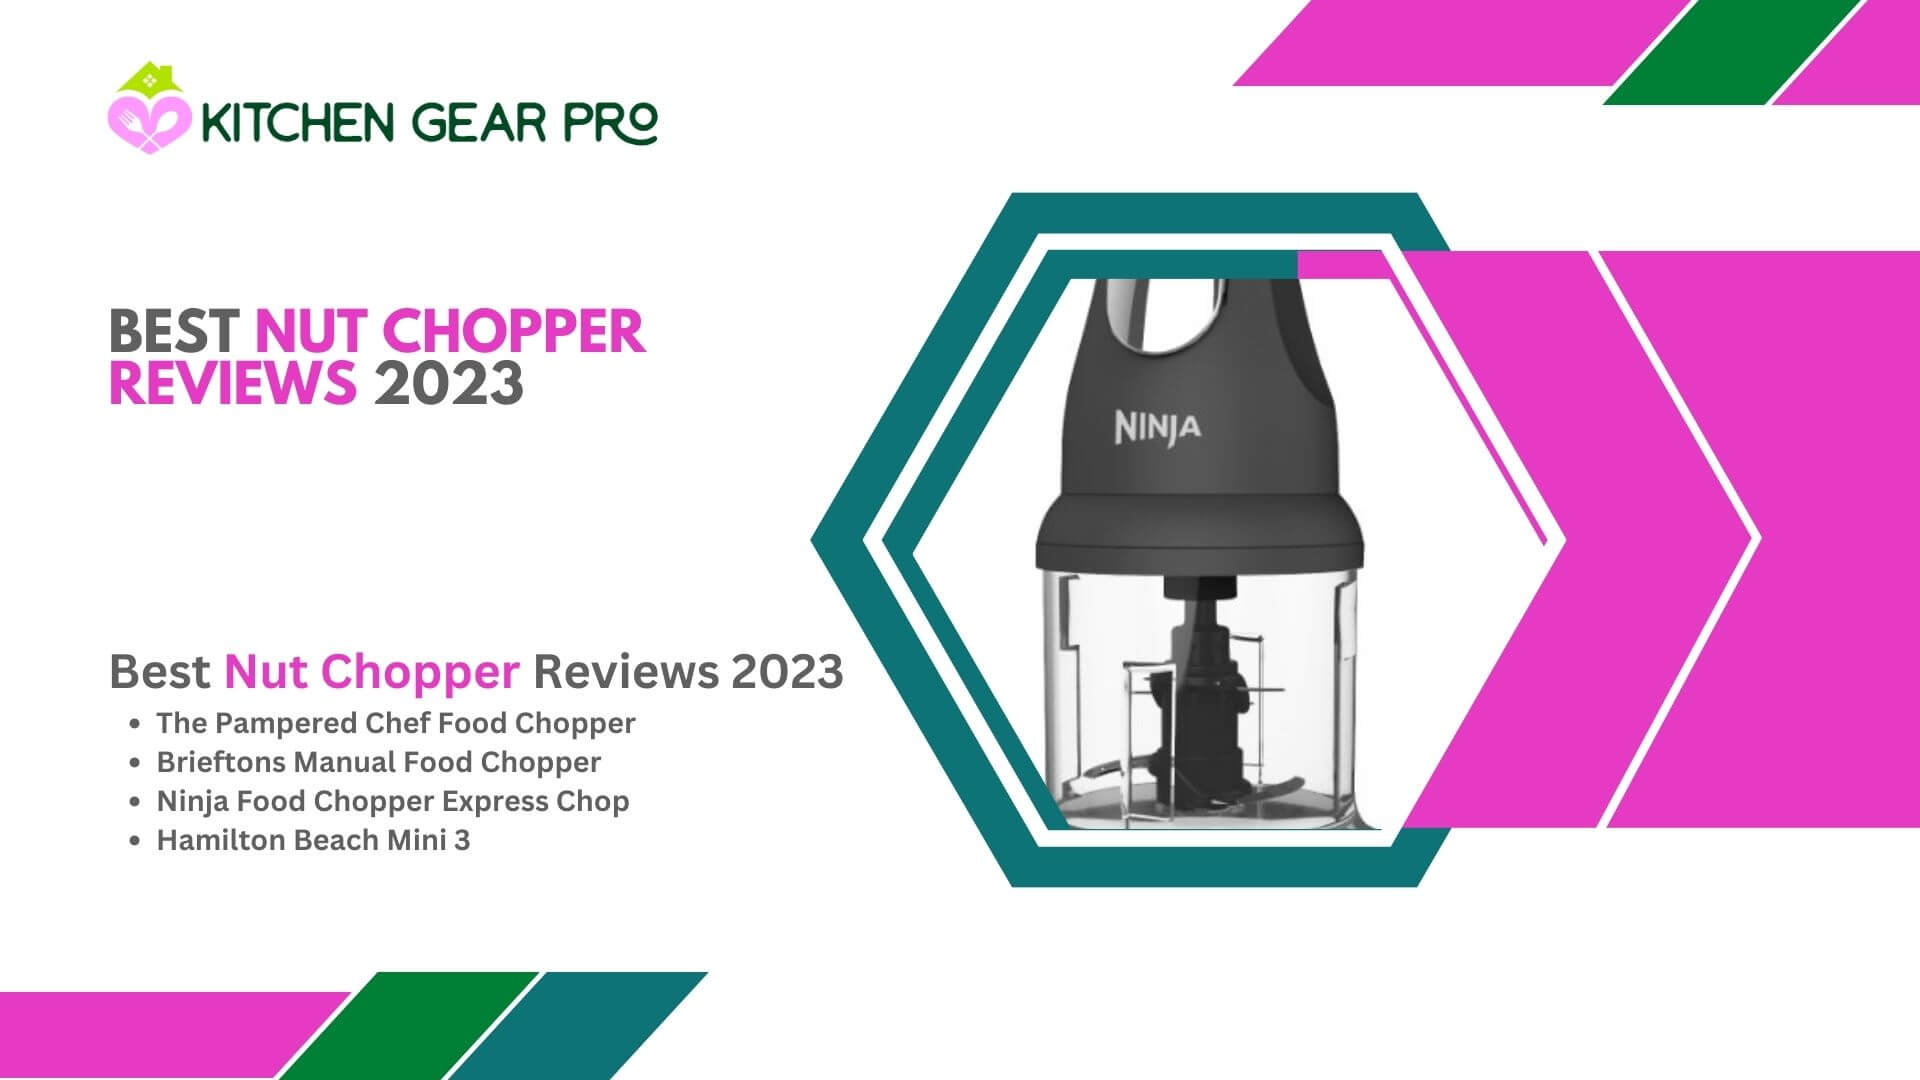 Best Nut Chopper Reviews 2023